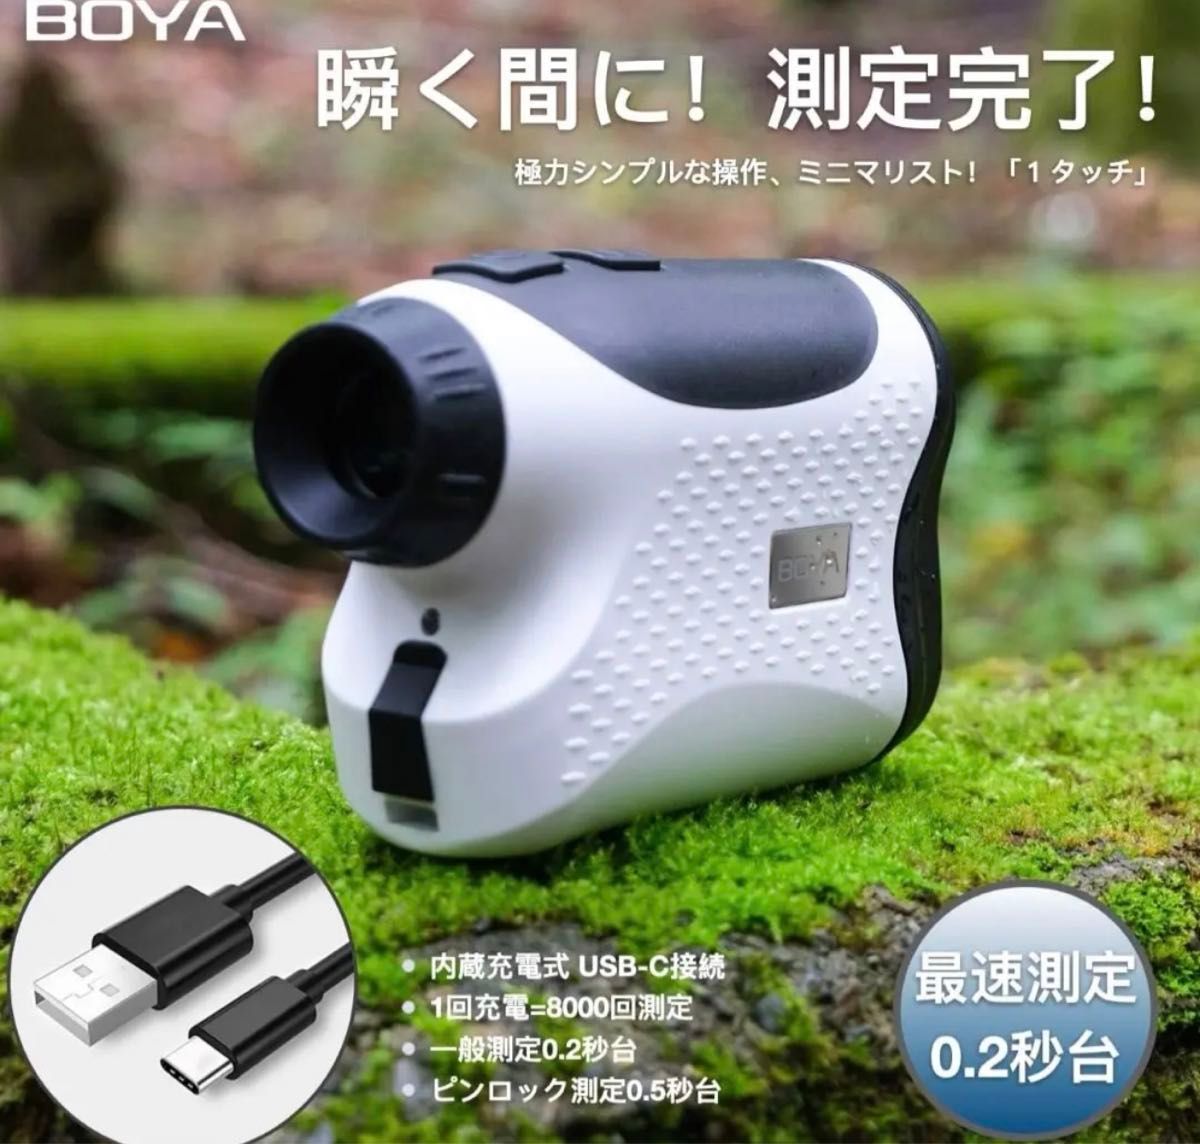 【新品】BOYAゴルフ距離計最新モデル レーザー距離計 距離測定器 ゴルフ用品 測量機